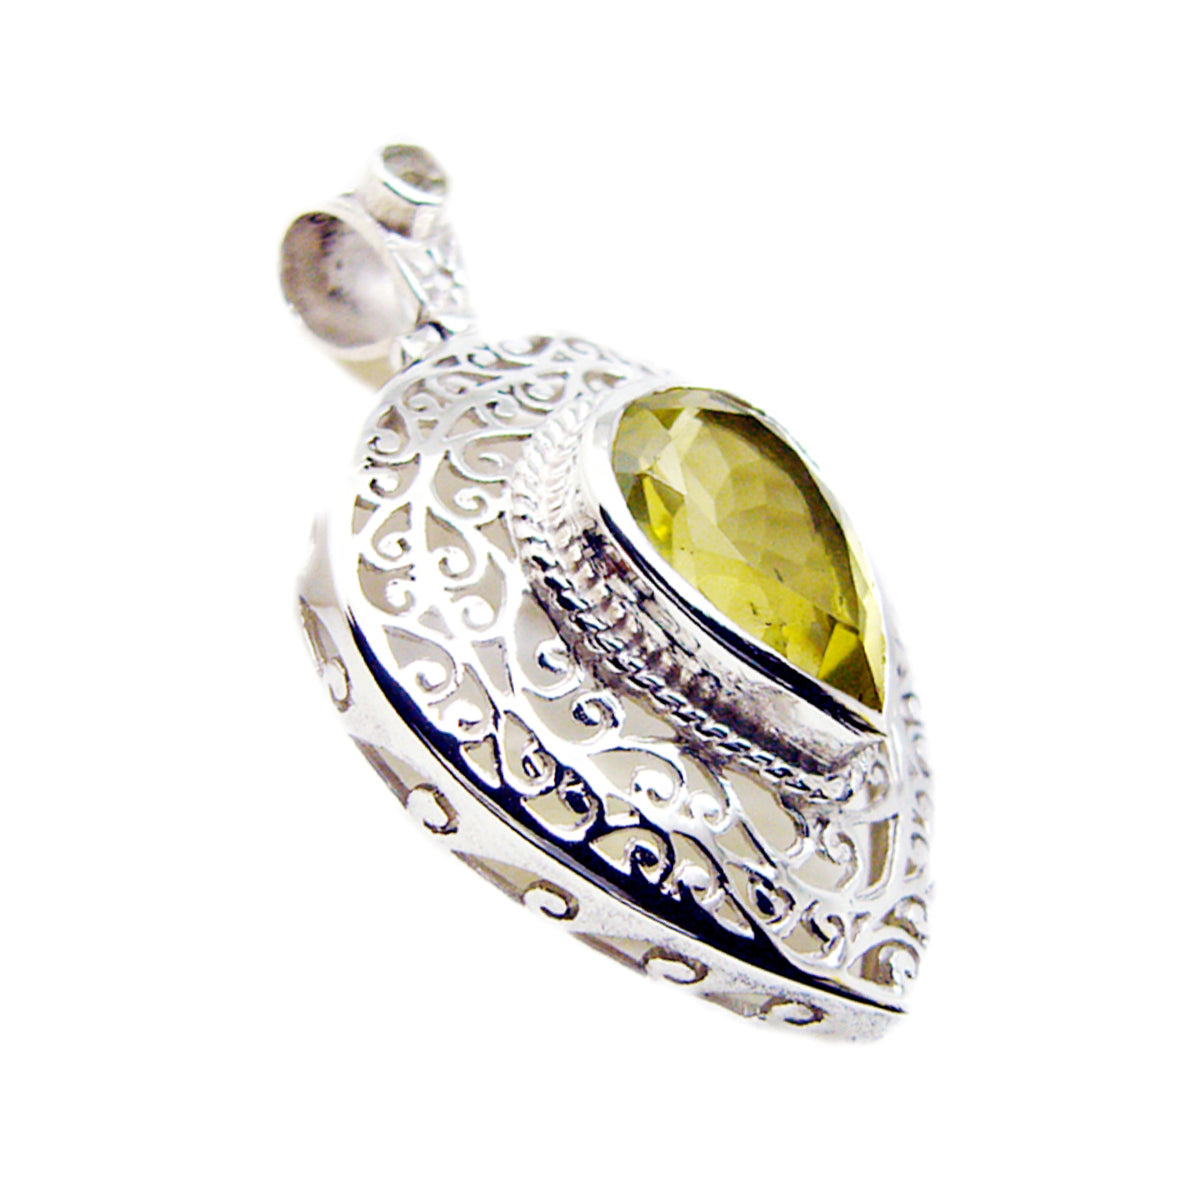 Riyo prachtige edelsteen peer gefacetteerde gele citroenkwarts 1000 sterling zilveren hanger cadeau voor vriendin